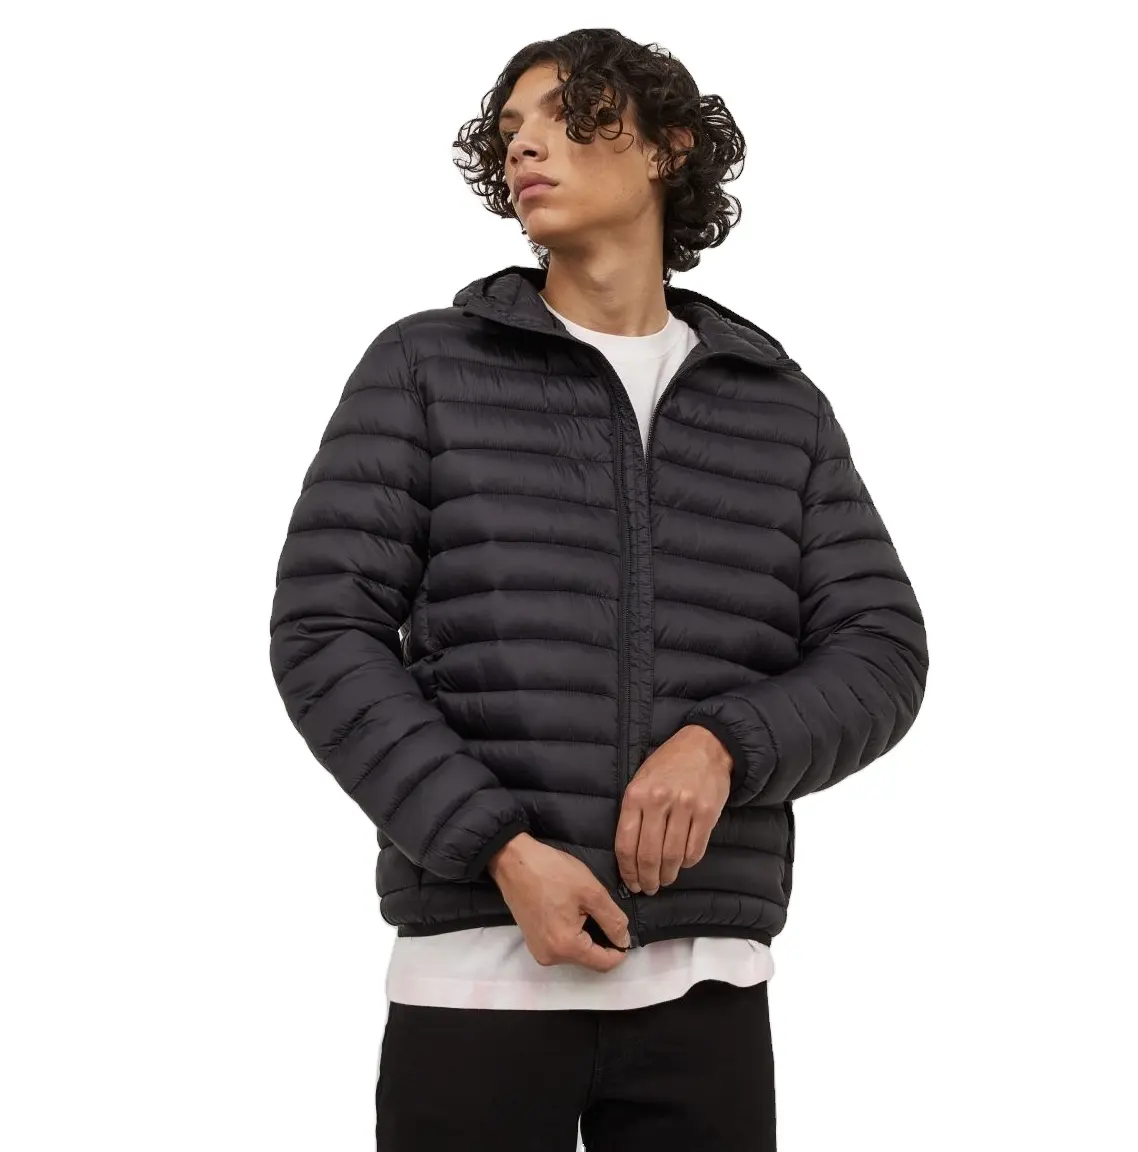 Jaqueta acolchoada bomber/puffer masculina, casaco acolchoado para homens, alta qualidade, personalizado, de alta qualidade